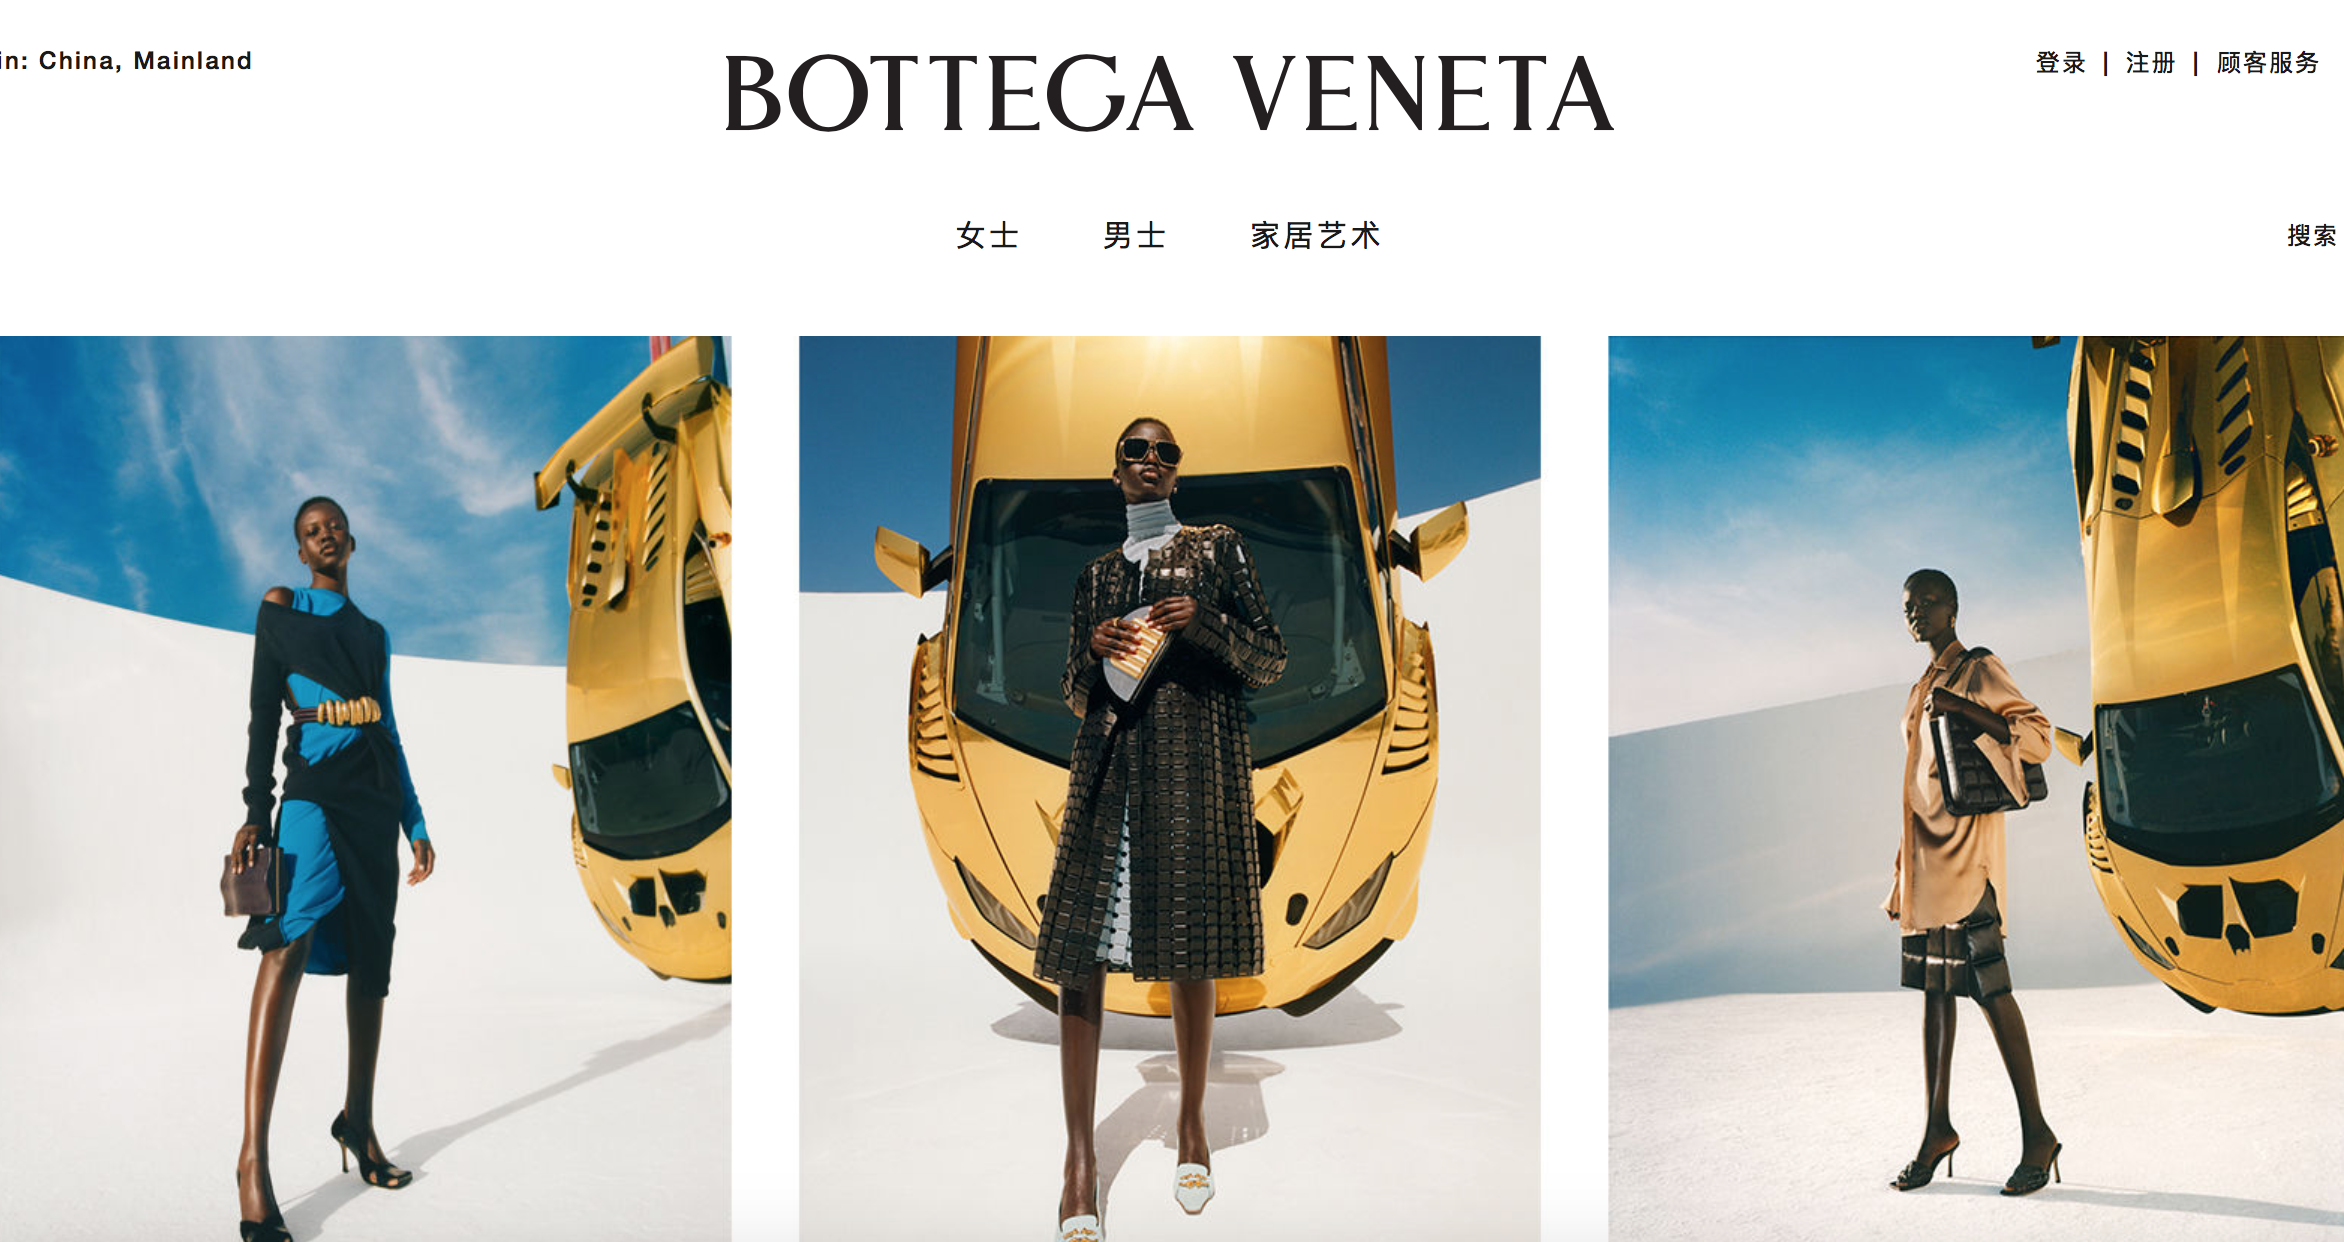 Bottega Veneta 扩大意大利本土产能，第三家工厂将于2020年底前投产